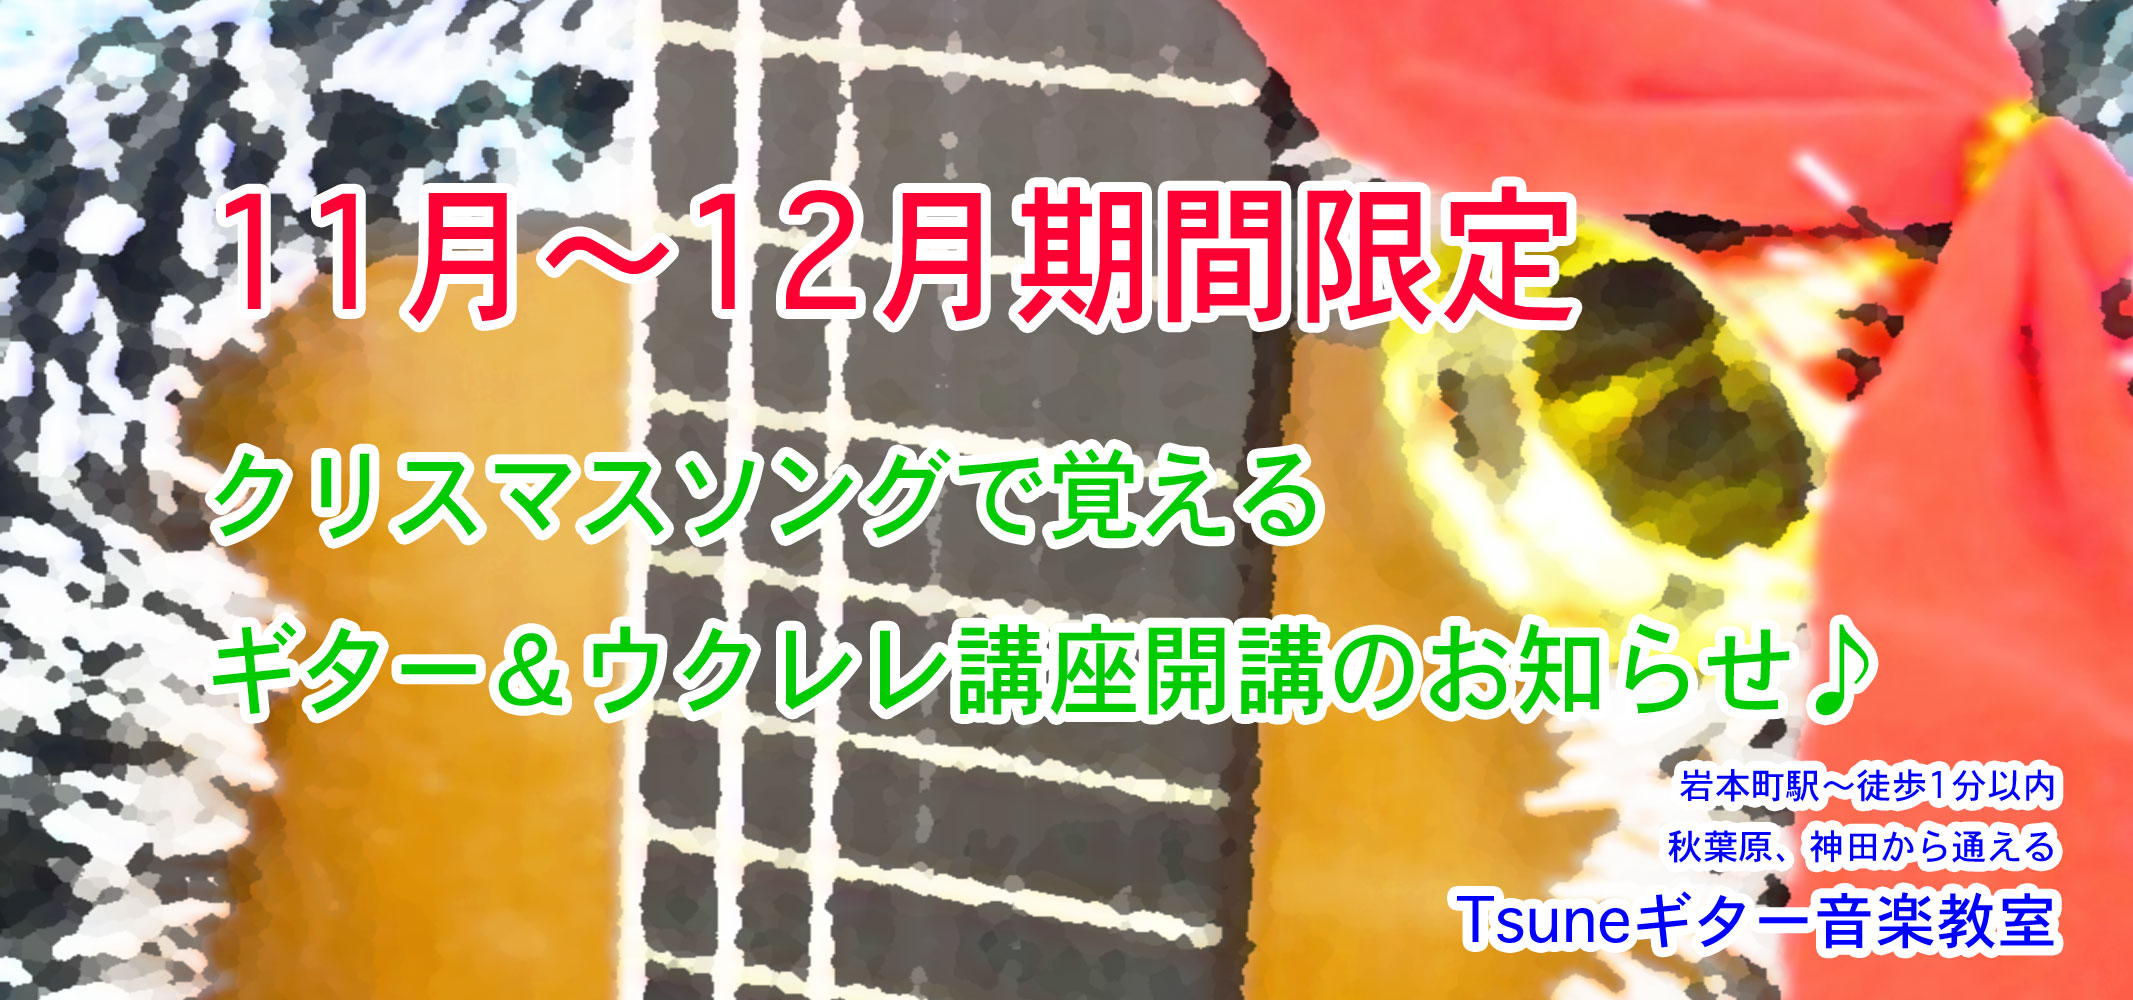 クリスマスソングで覚えるギター ウクレレ講座 Tsuneギター音楽教室